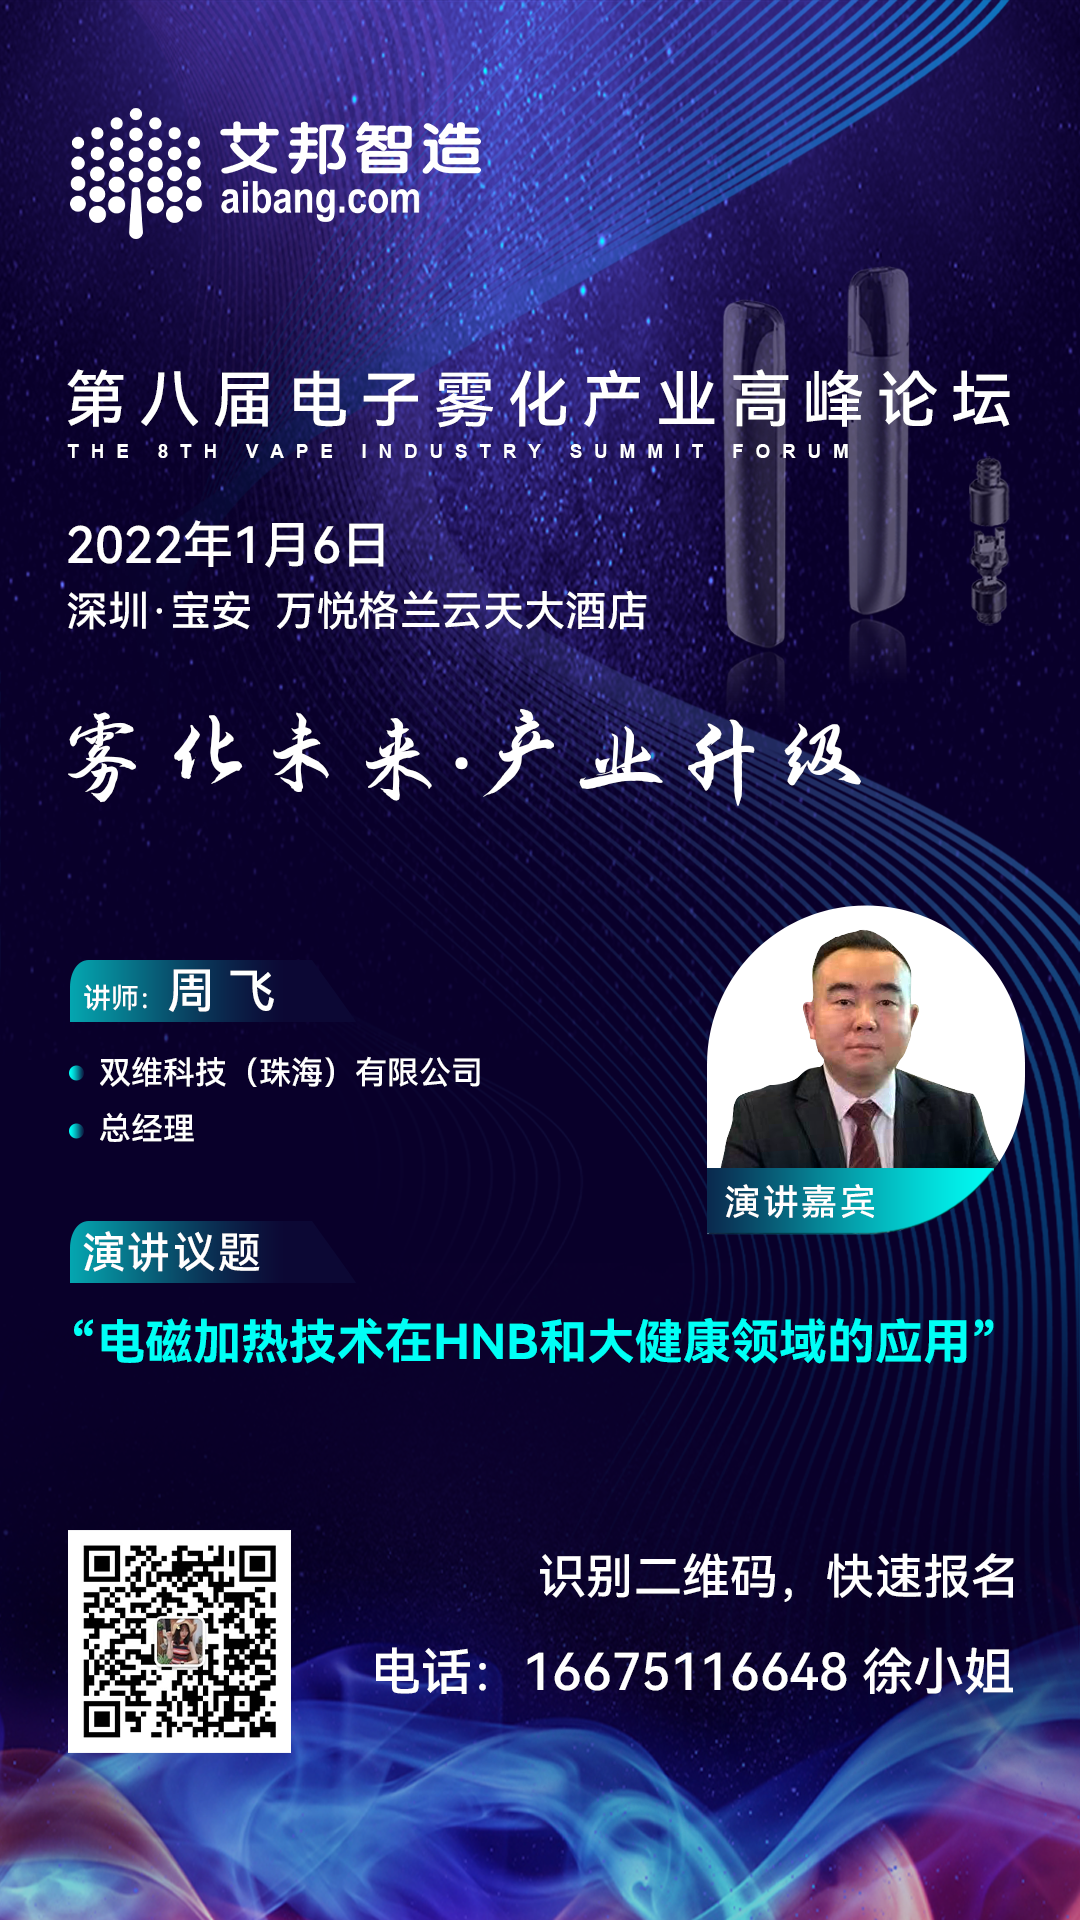 双维将出席第八届电子雾化产业高峰论坛并做主题演讲（1月6日~深圳）